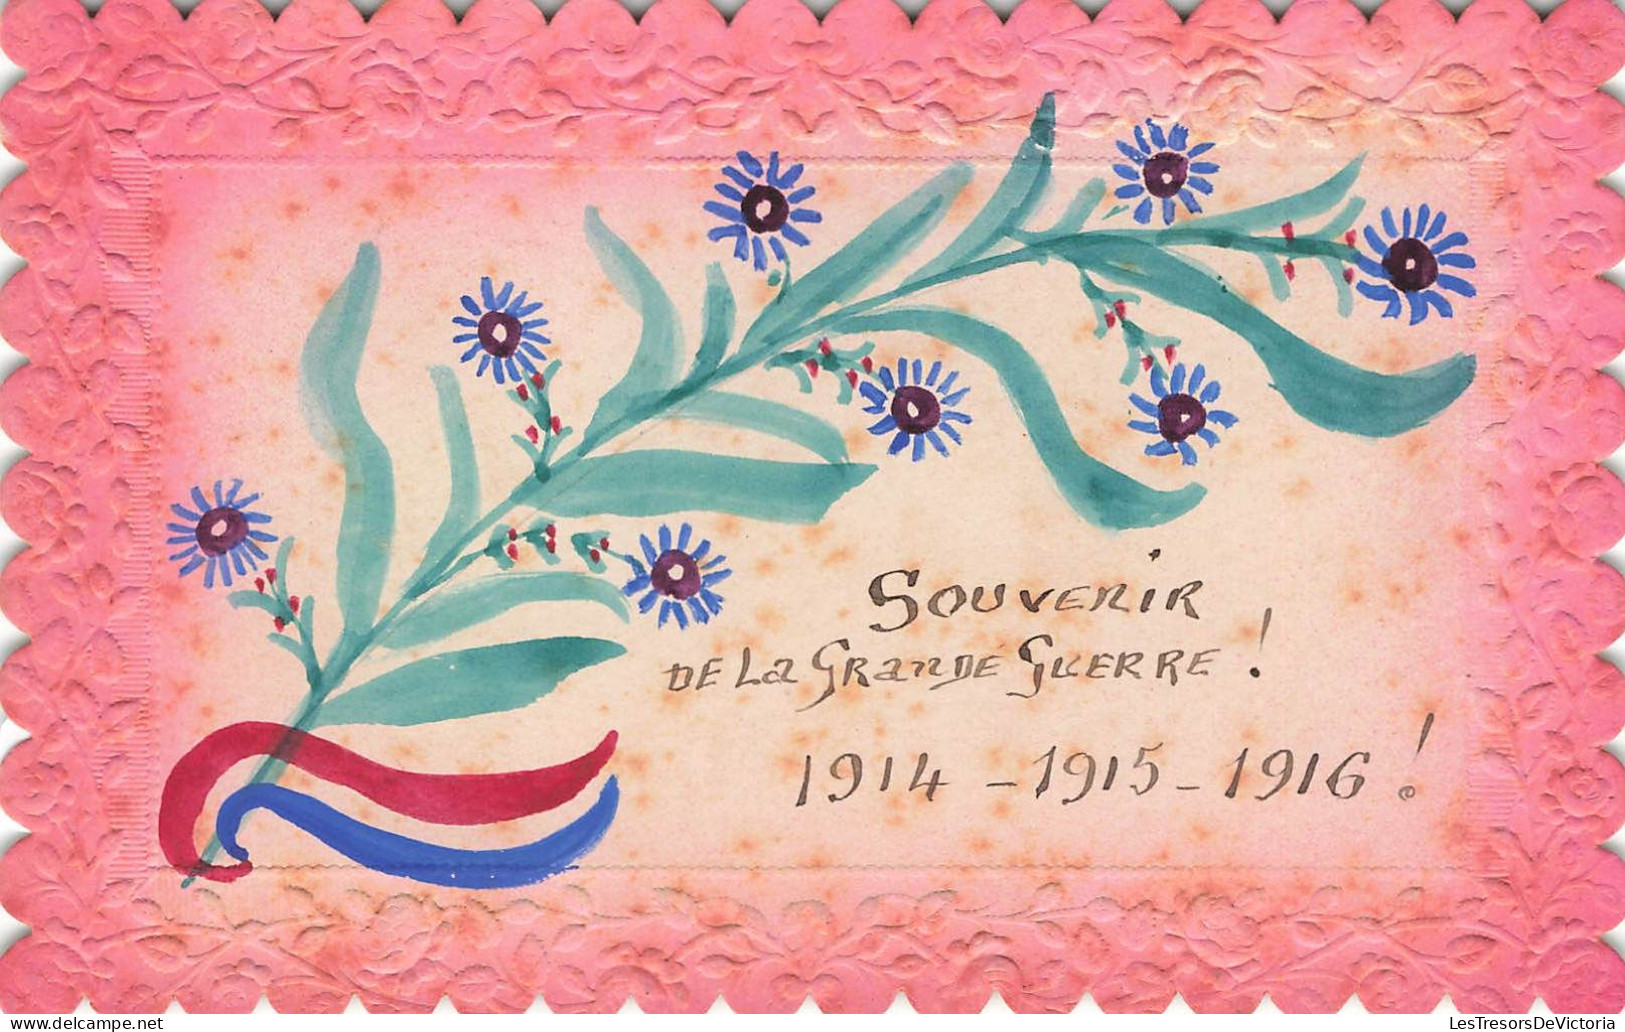 SOUVENIR DE - Souvenir De La Grande Guerre! 1914 - 1915 - 1916 - Colorisé - Carte Postale Ancienne - Gruss Aus.../ Gruesse Aus...